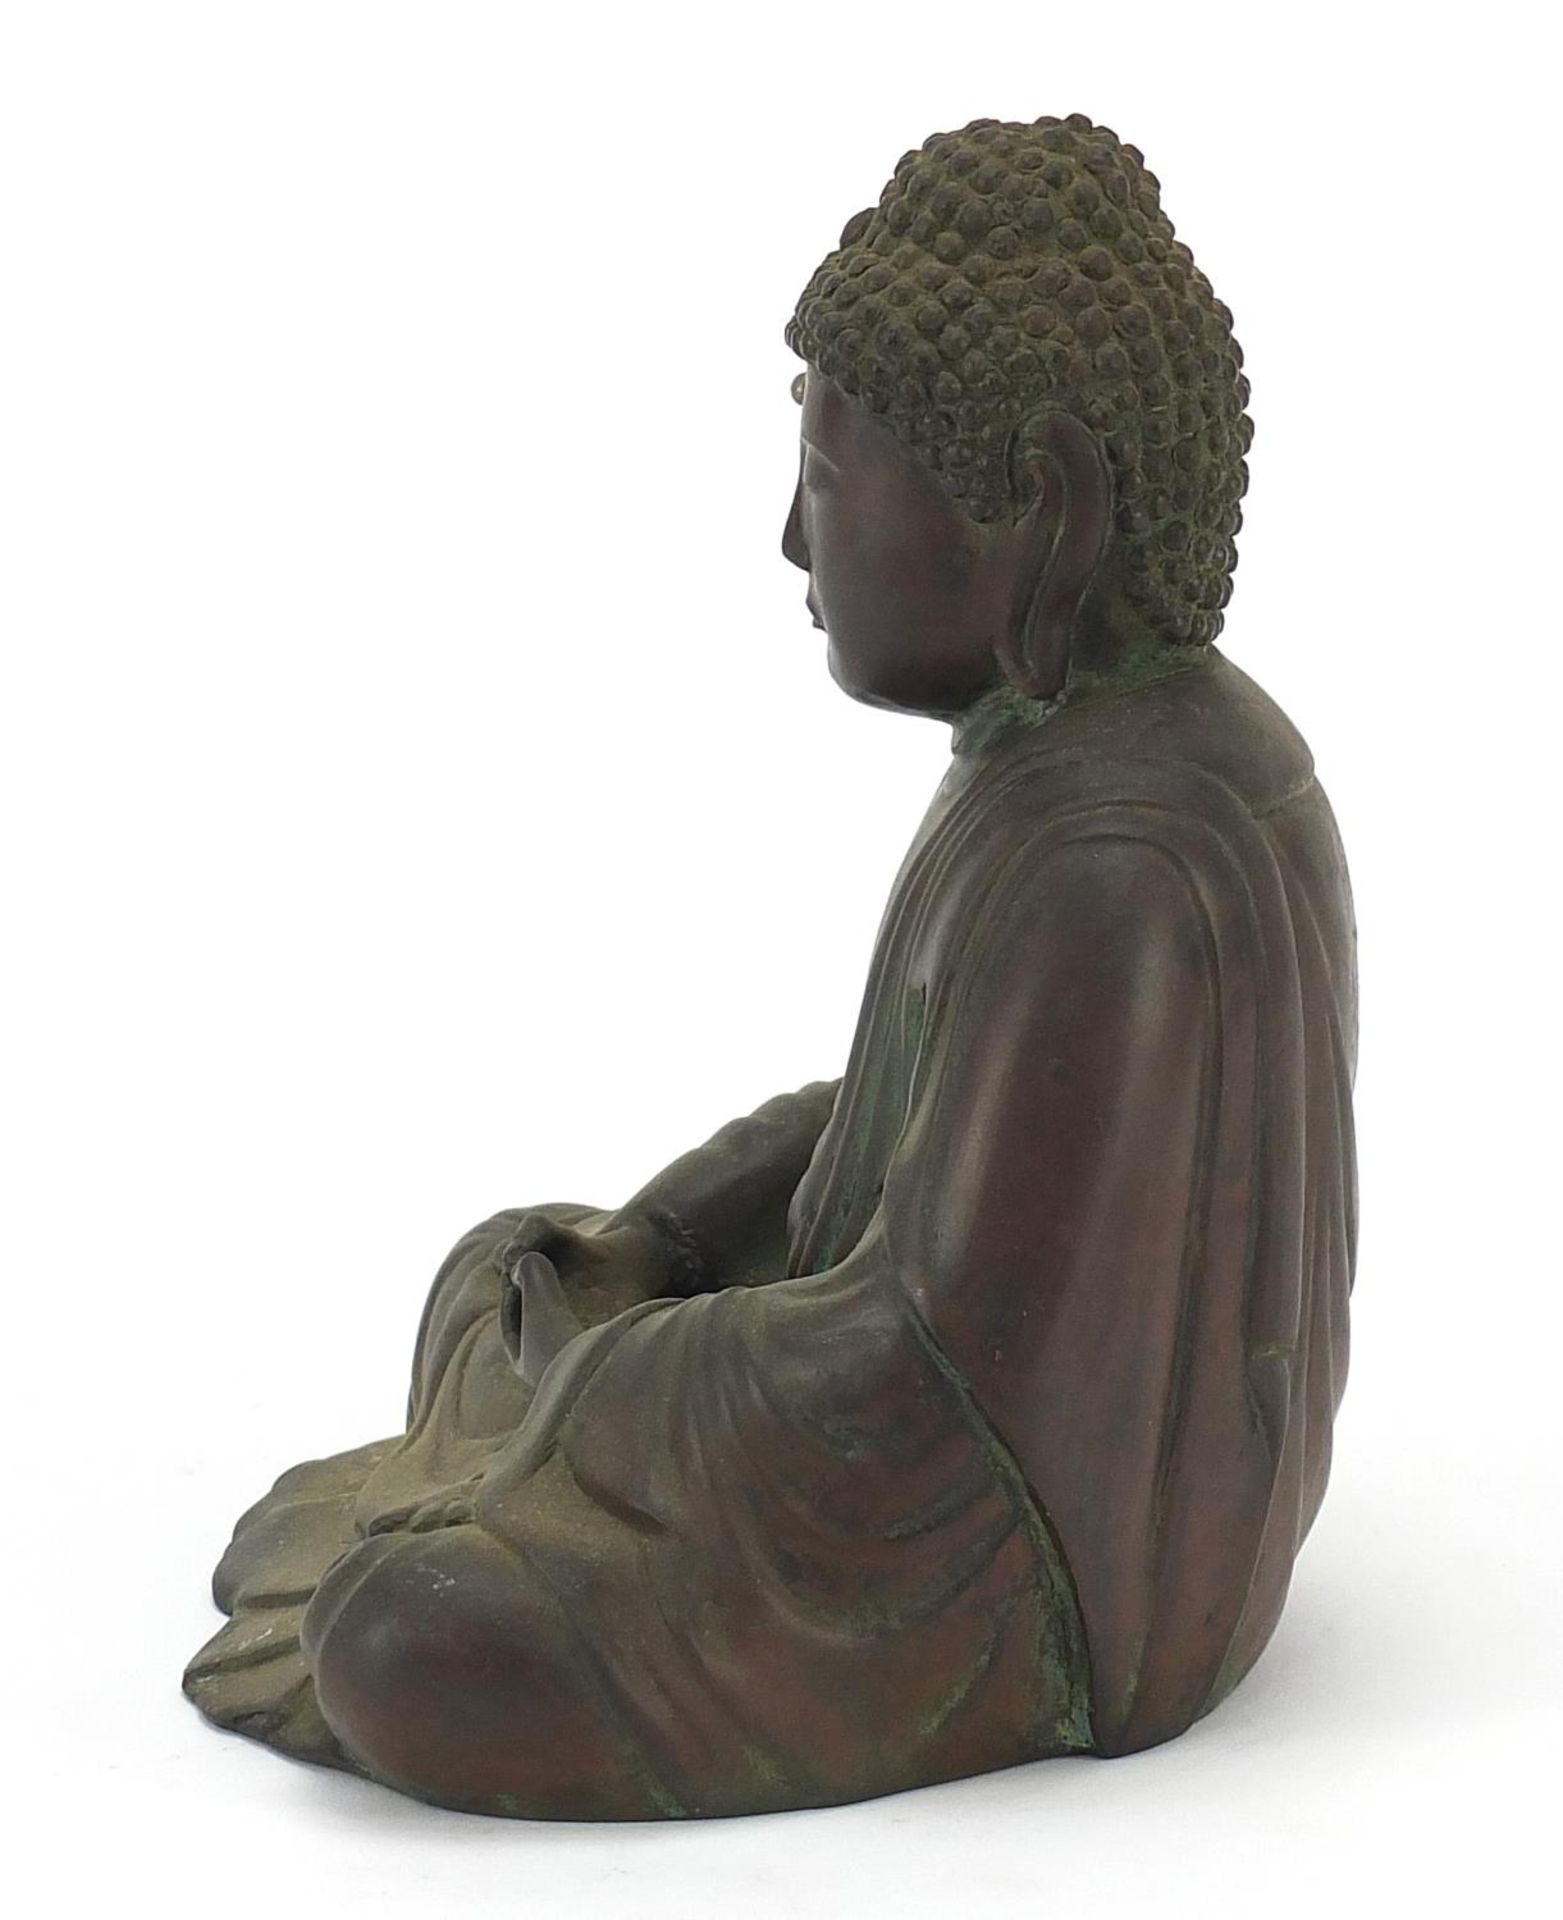 Chino Tibetan patinated bronze figure of seated Buddha, 18cm high - Image 3 of 7